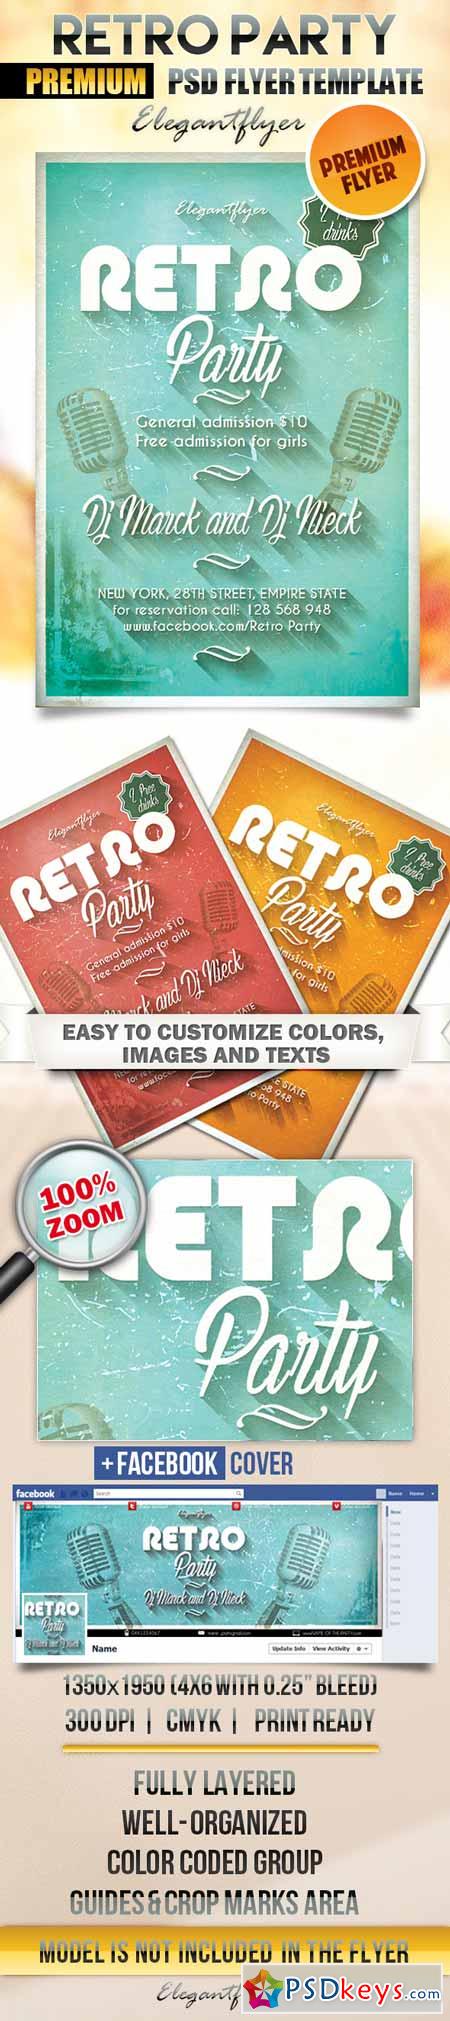 Retro Party 2  Flyer PSD Template + Facebook Cover